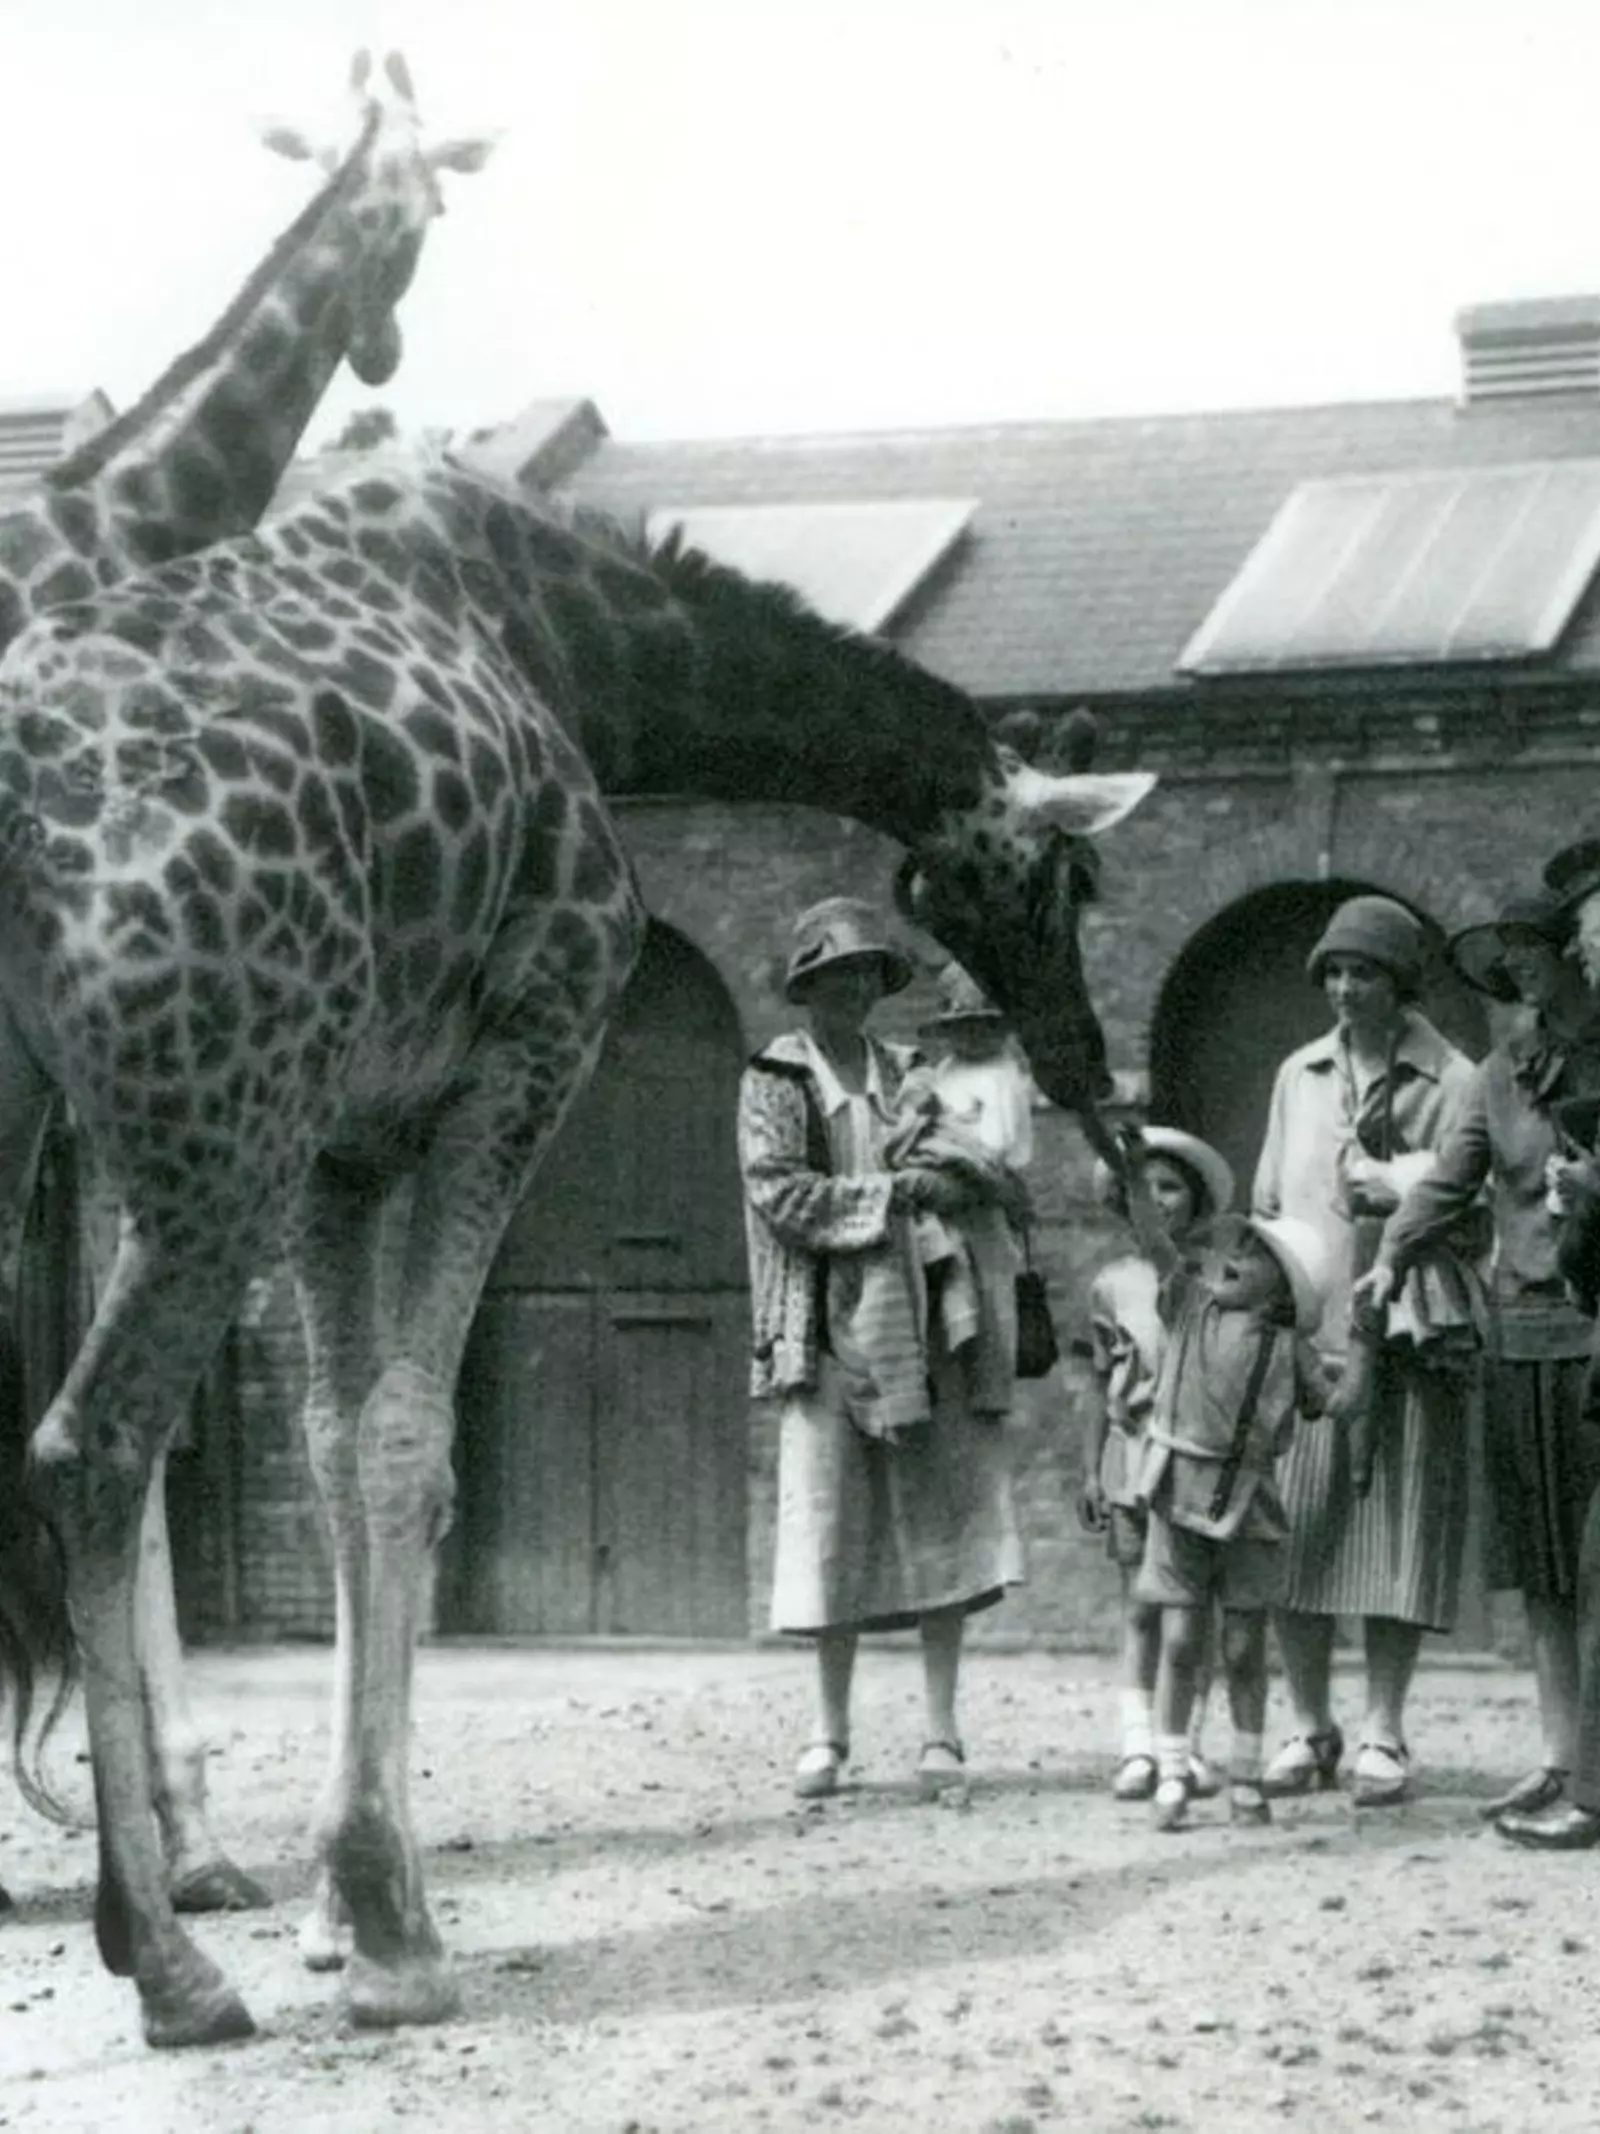 Black and white photo of giraffes at Decimus Burton's Giraffe House